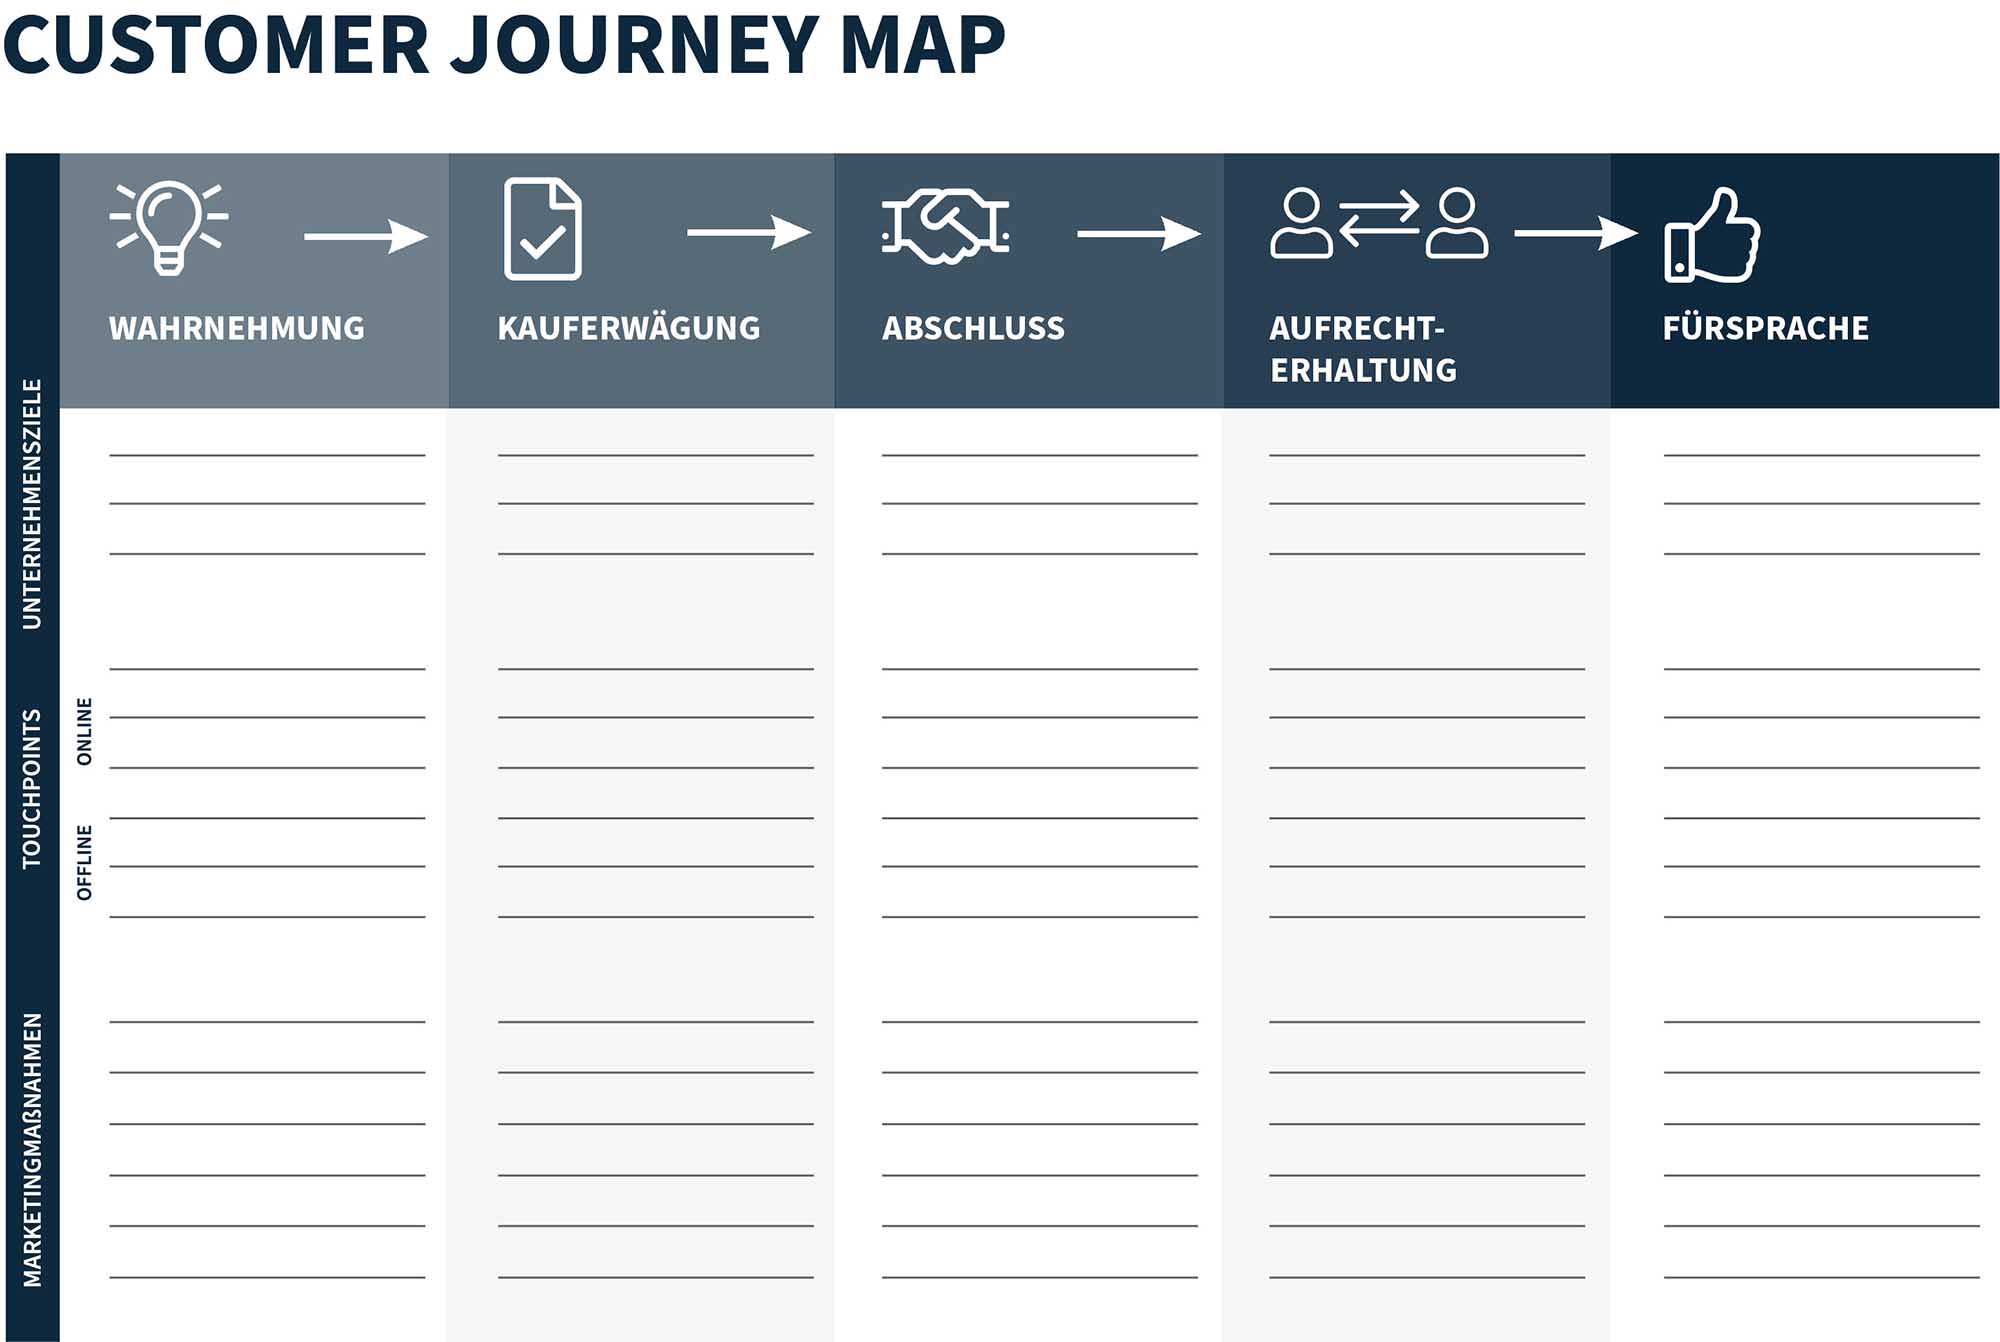 Vorlage zur Erstellung Ihrer eigenen Customer Journey Map